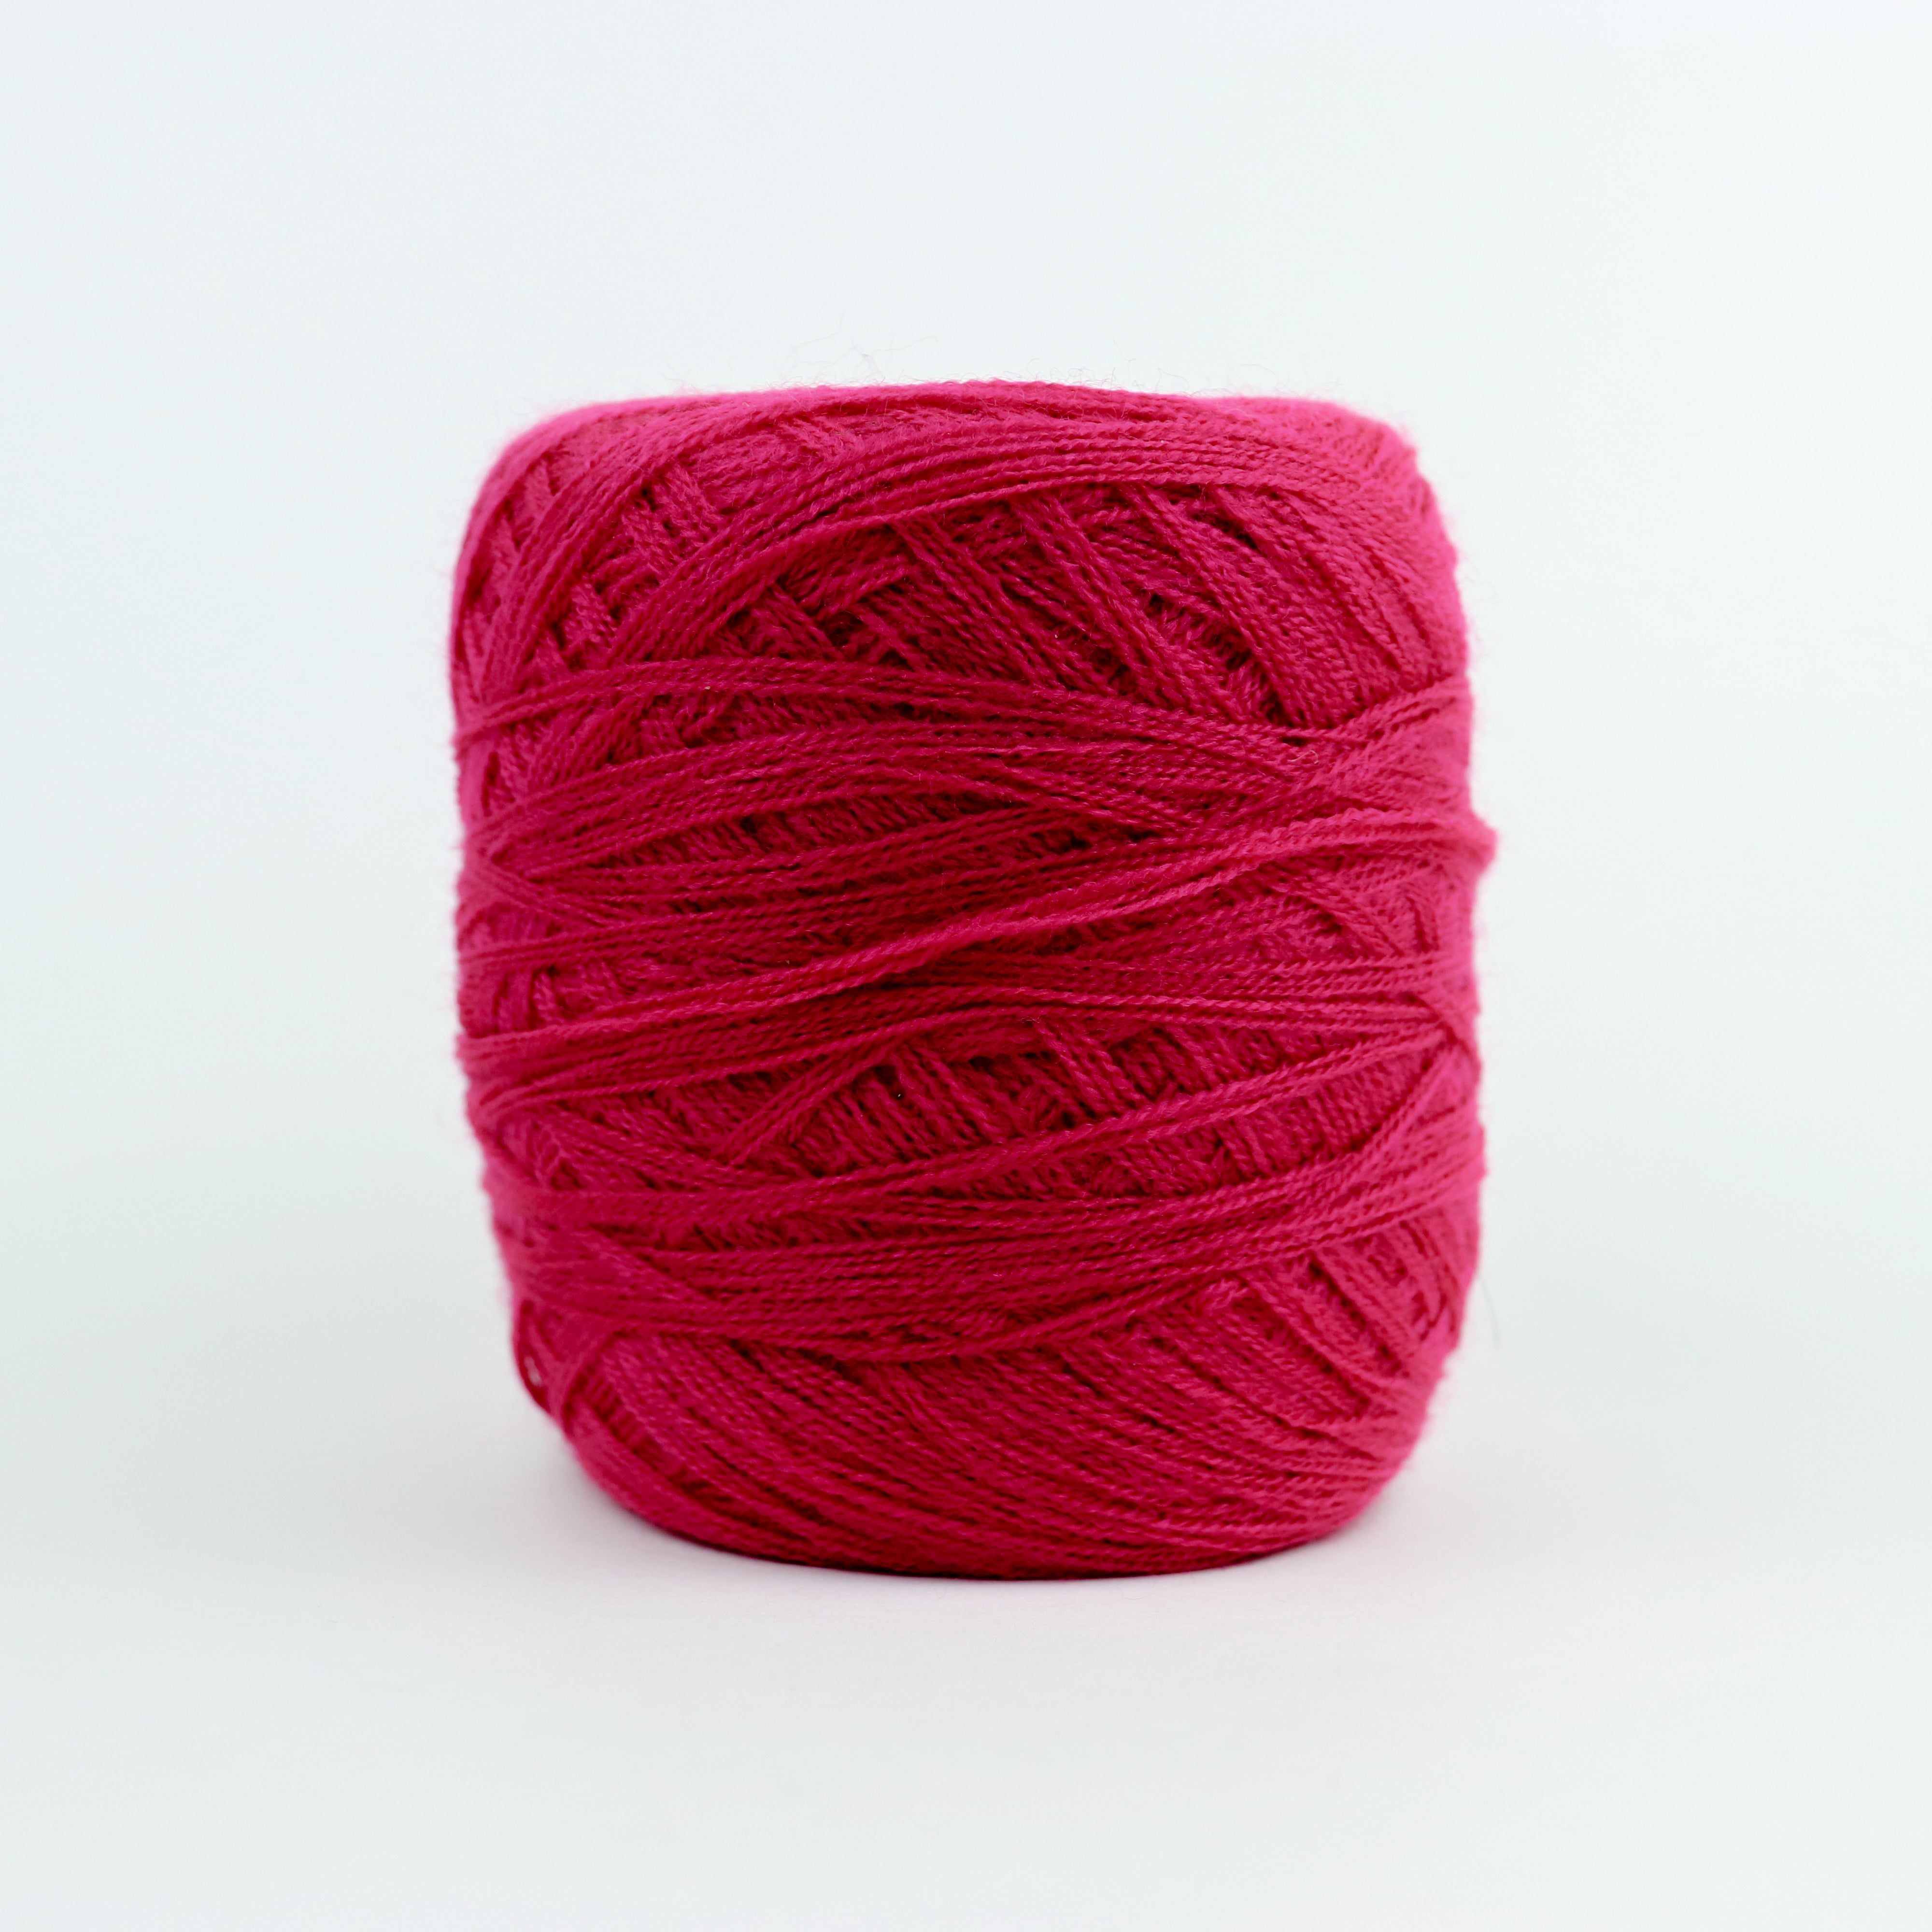 Light Red - Yarn 1 mm